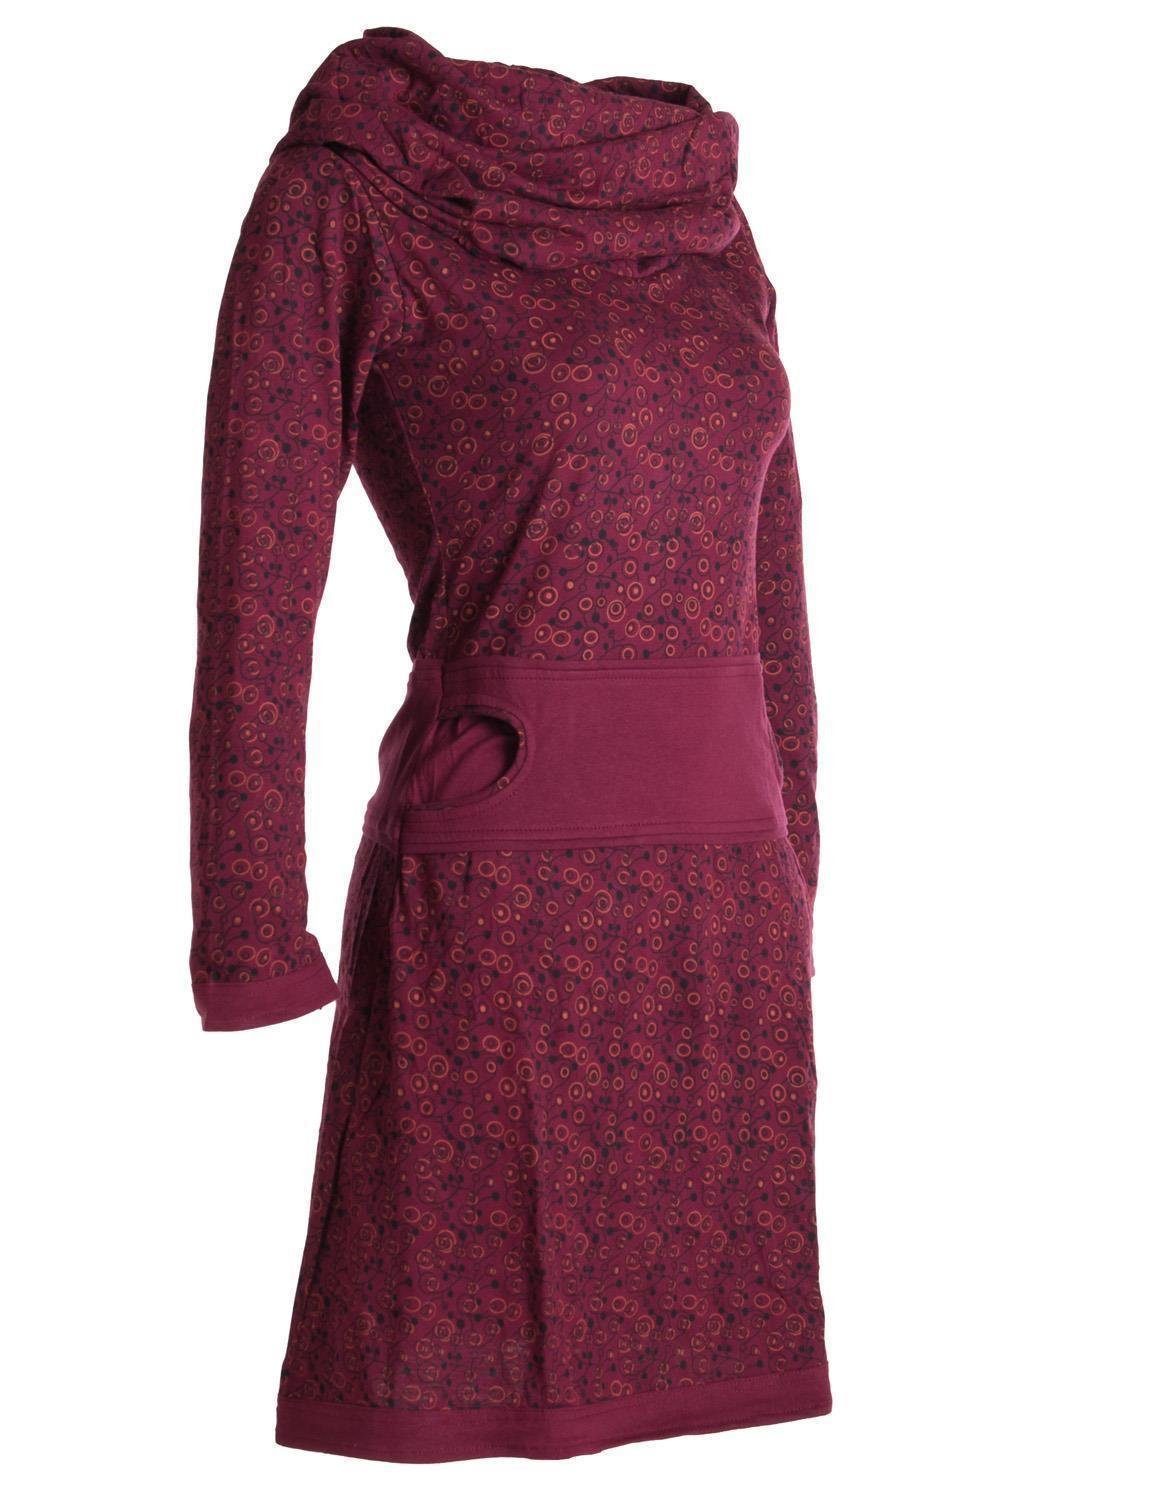 Vishes Jerseykleid Bedrucktes mit Schalkragen Style Goa, aus dunkelrot Ethno, Hippie Baumwolle Boho, Kleid